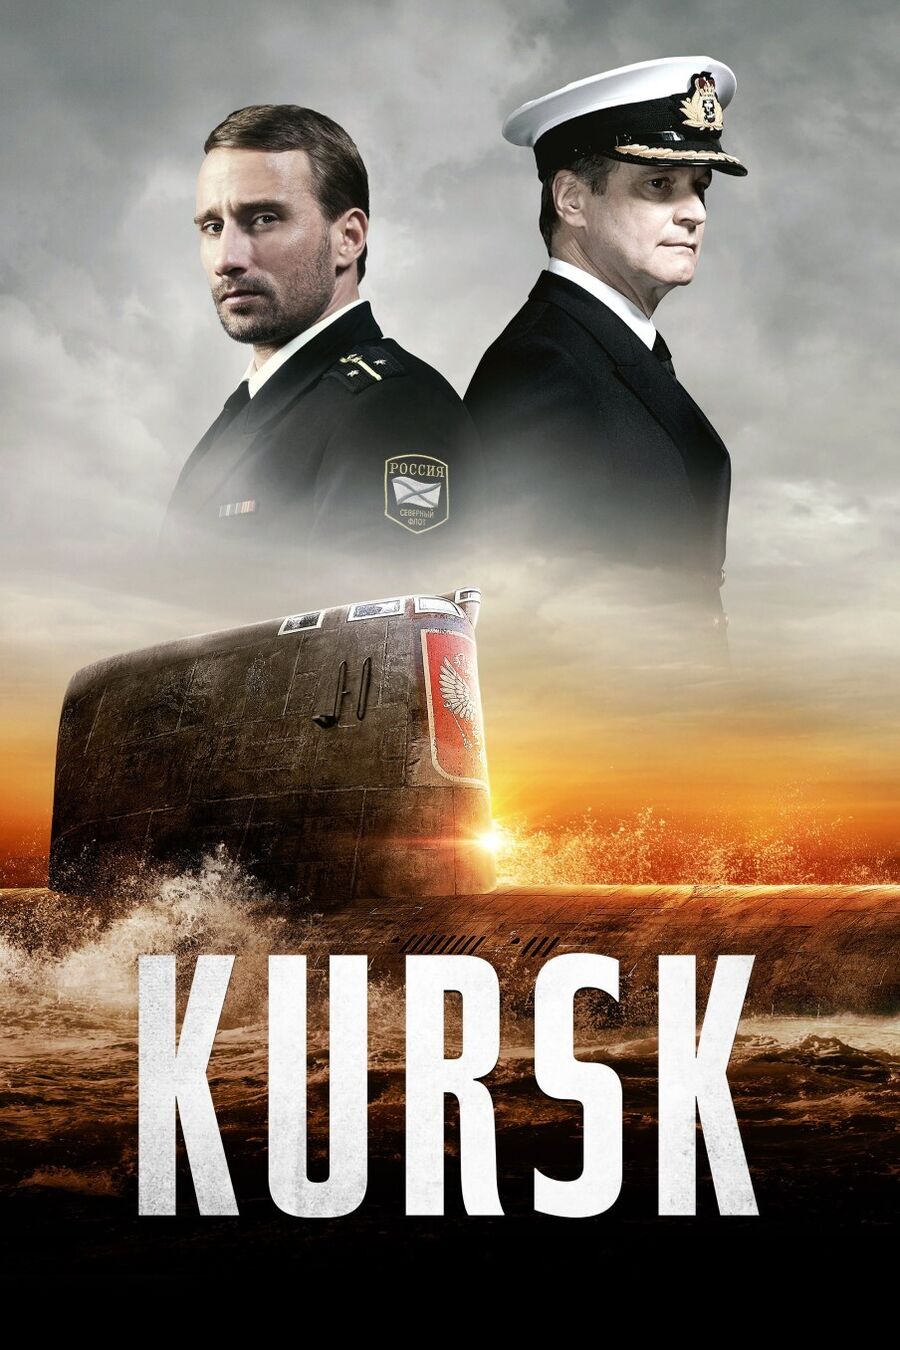 Se 'Kursk' for 0 points i september på Filmstriben